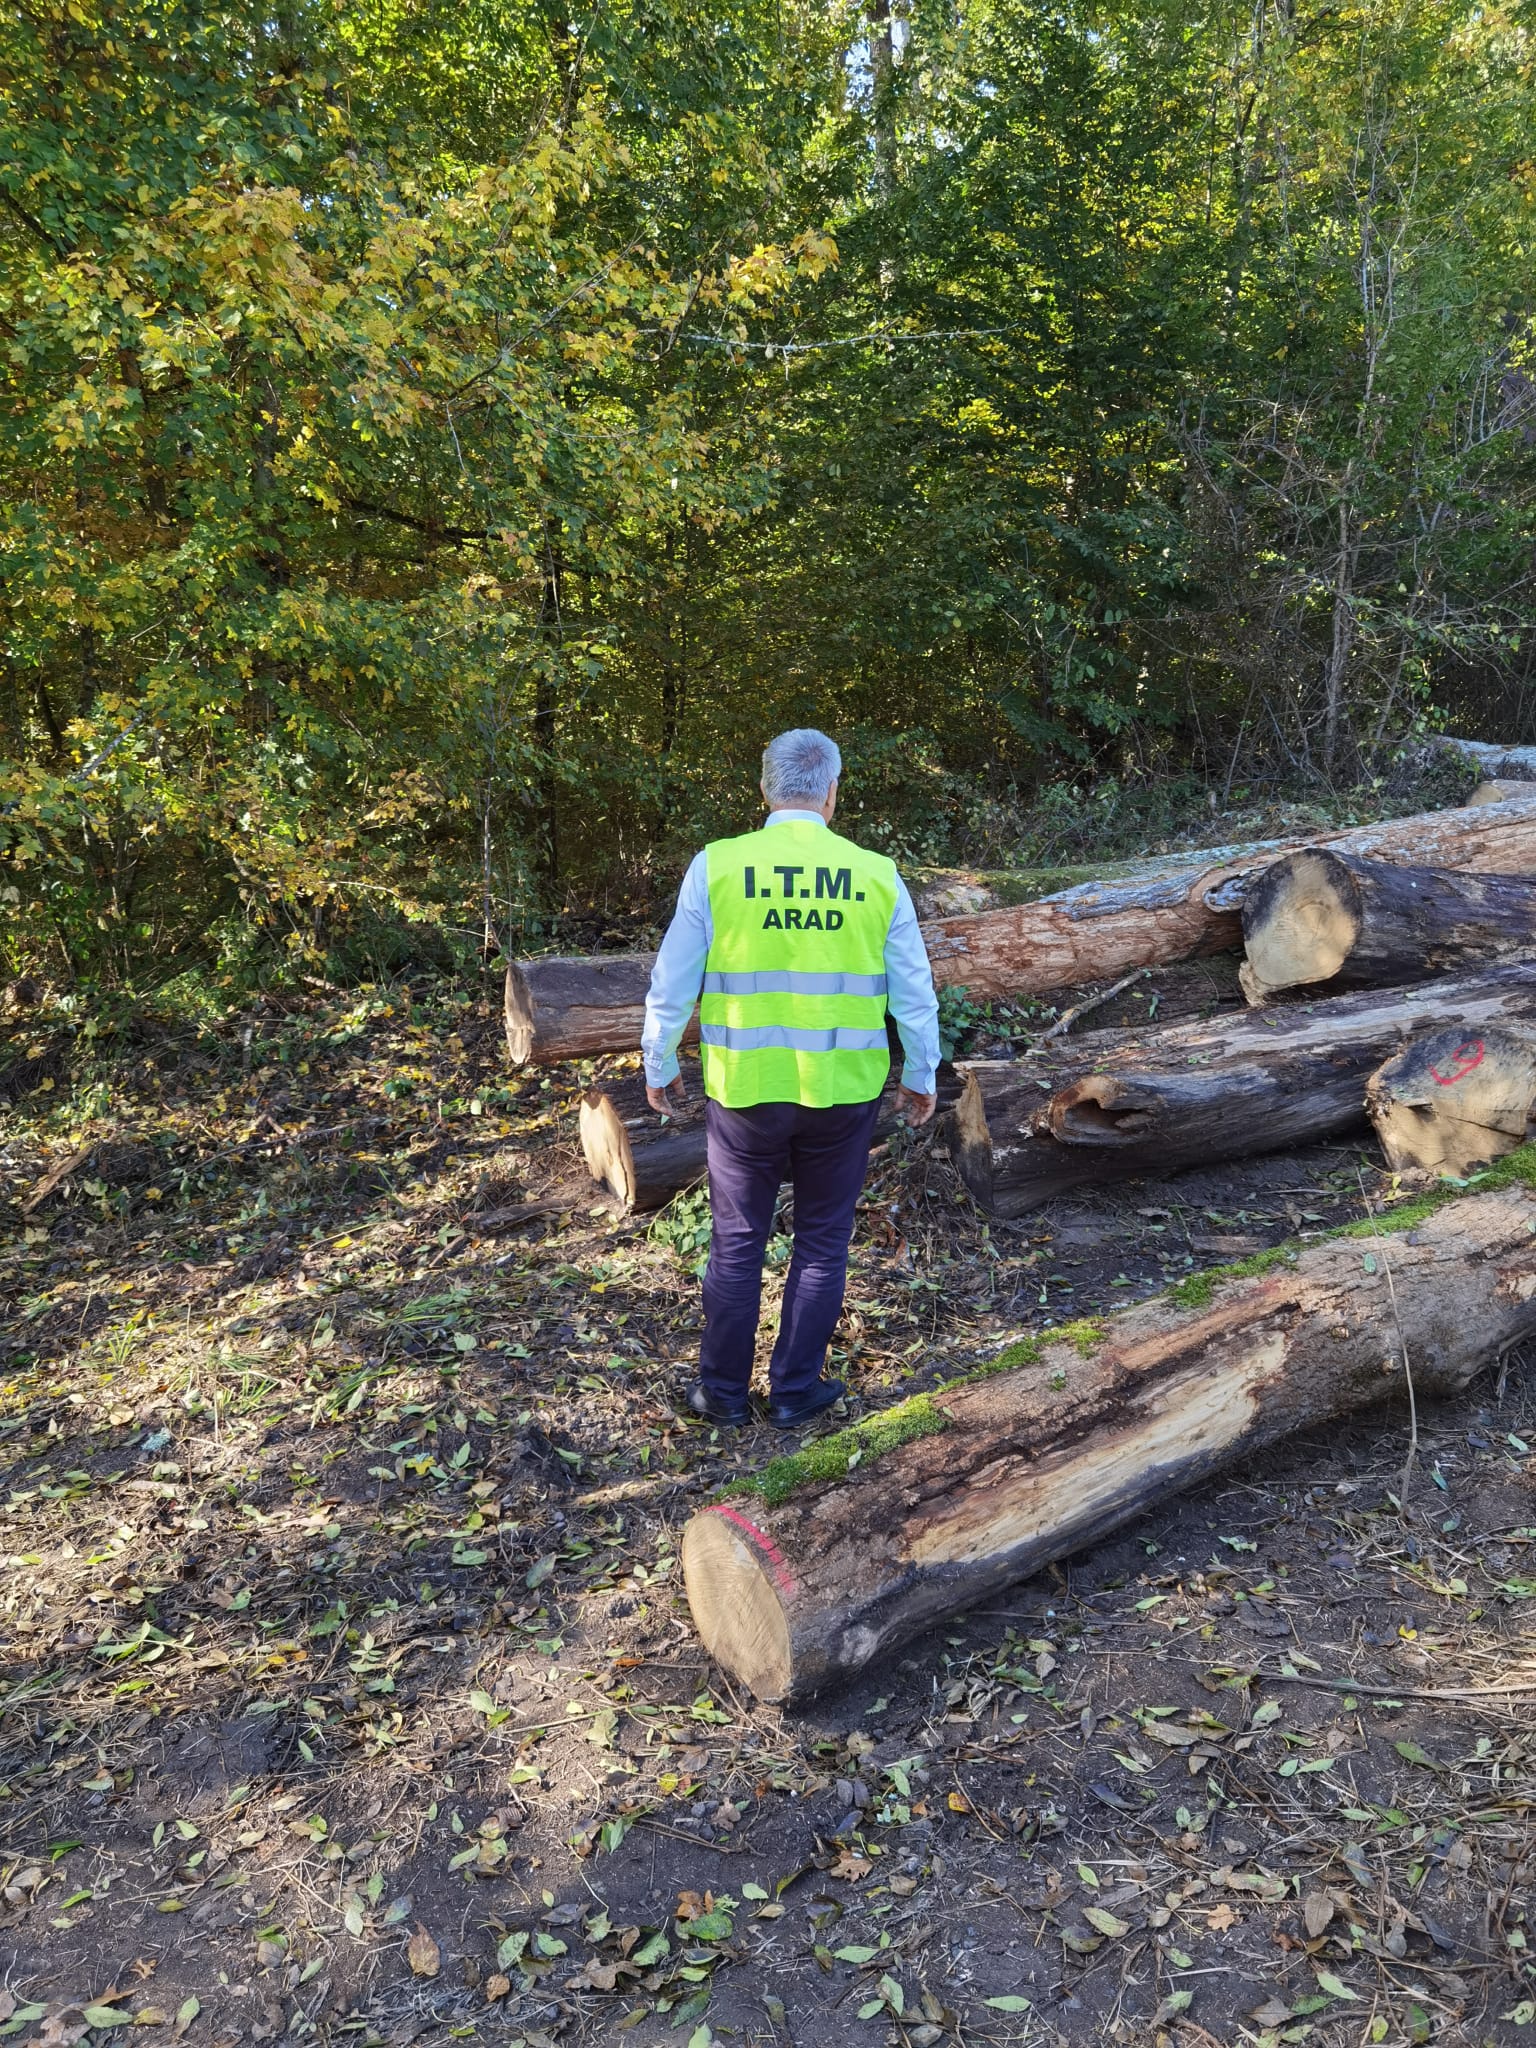 Actiune de control in parchetele forestiere, inclusiv la transportul tehnologic al masei lemnoase pe drumurile forestiere